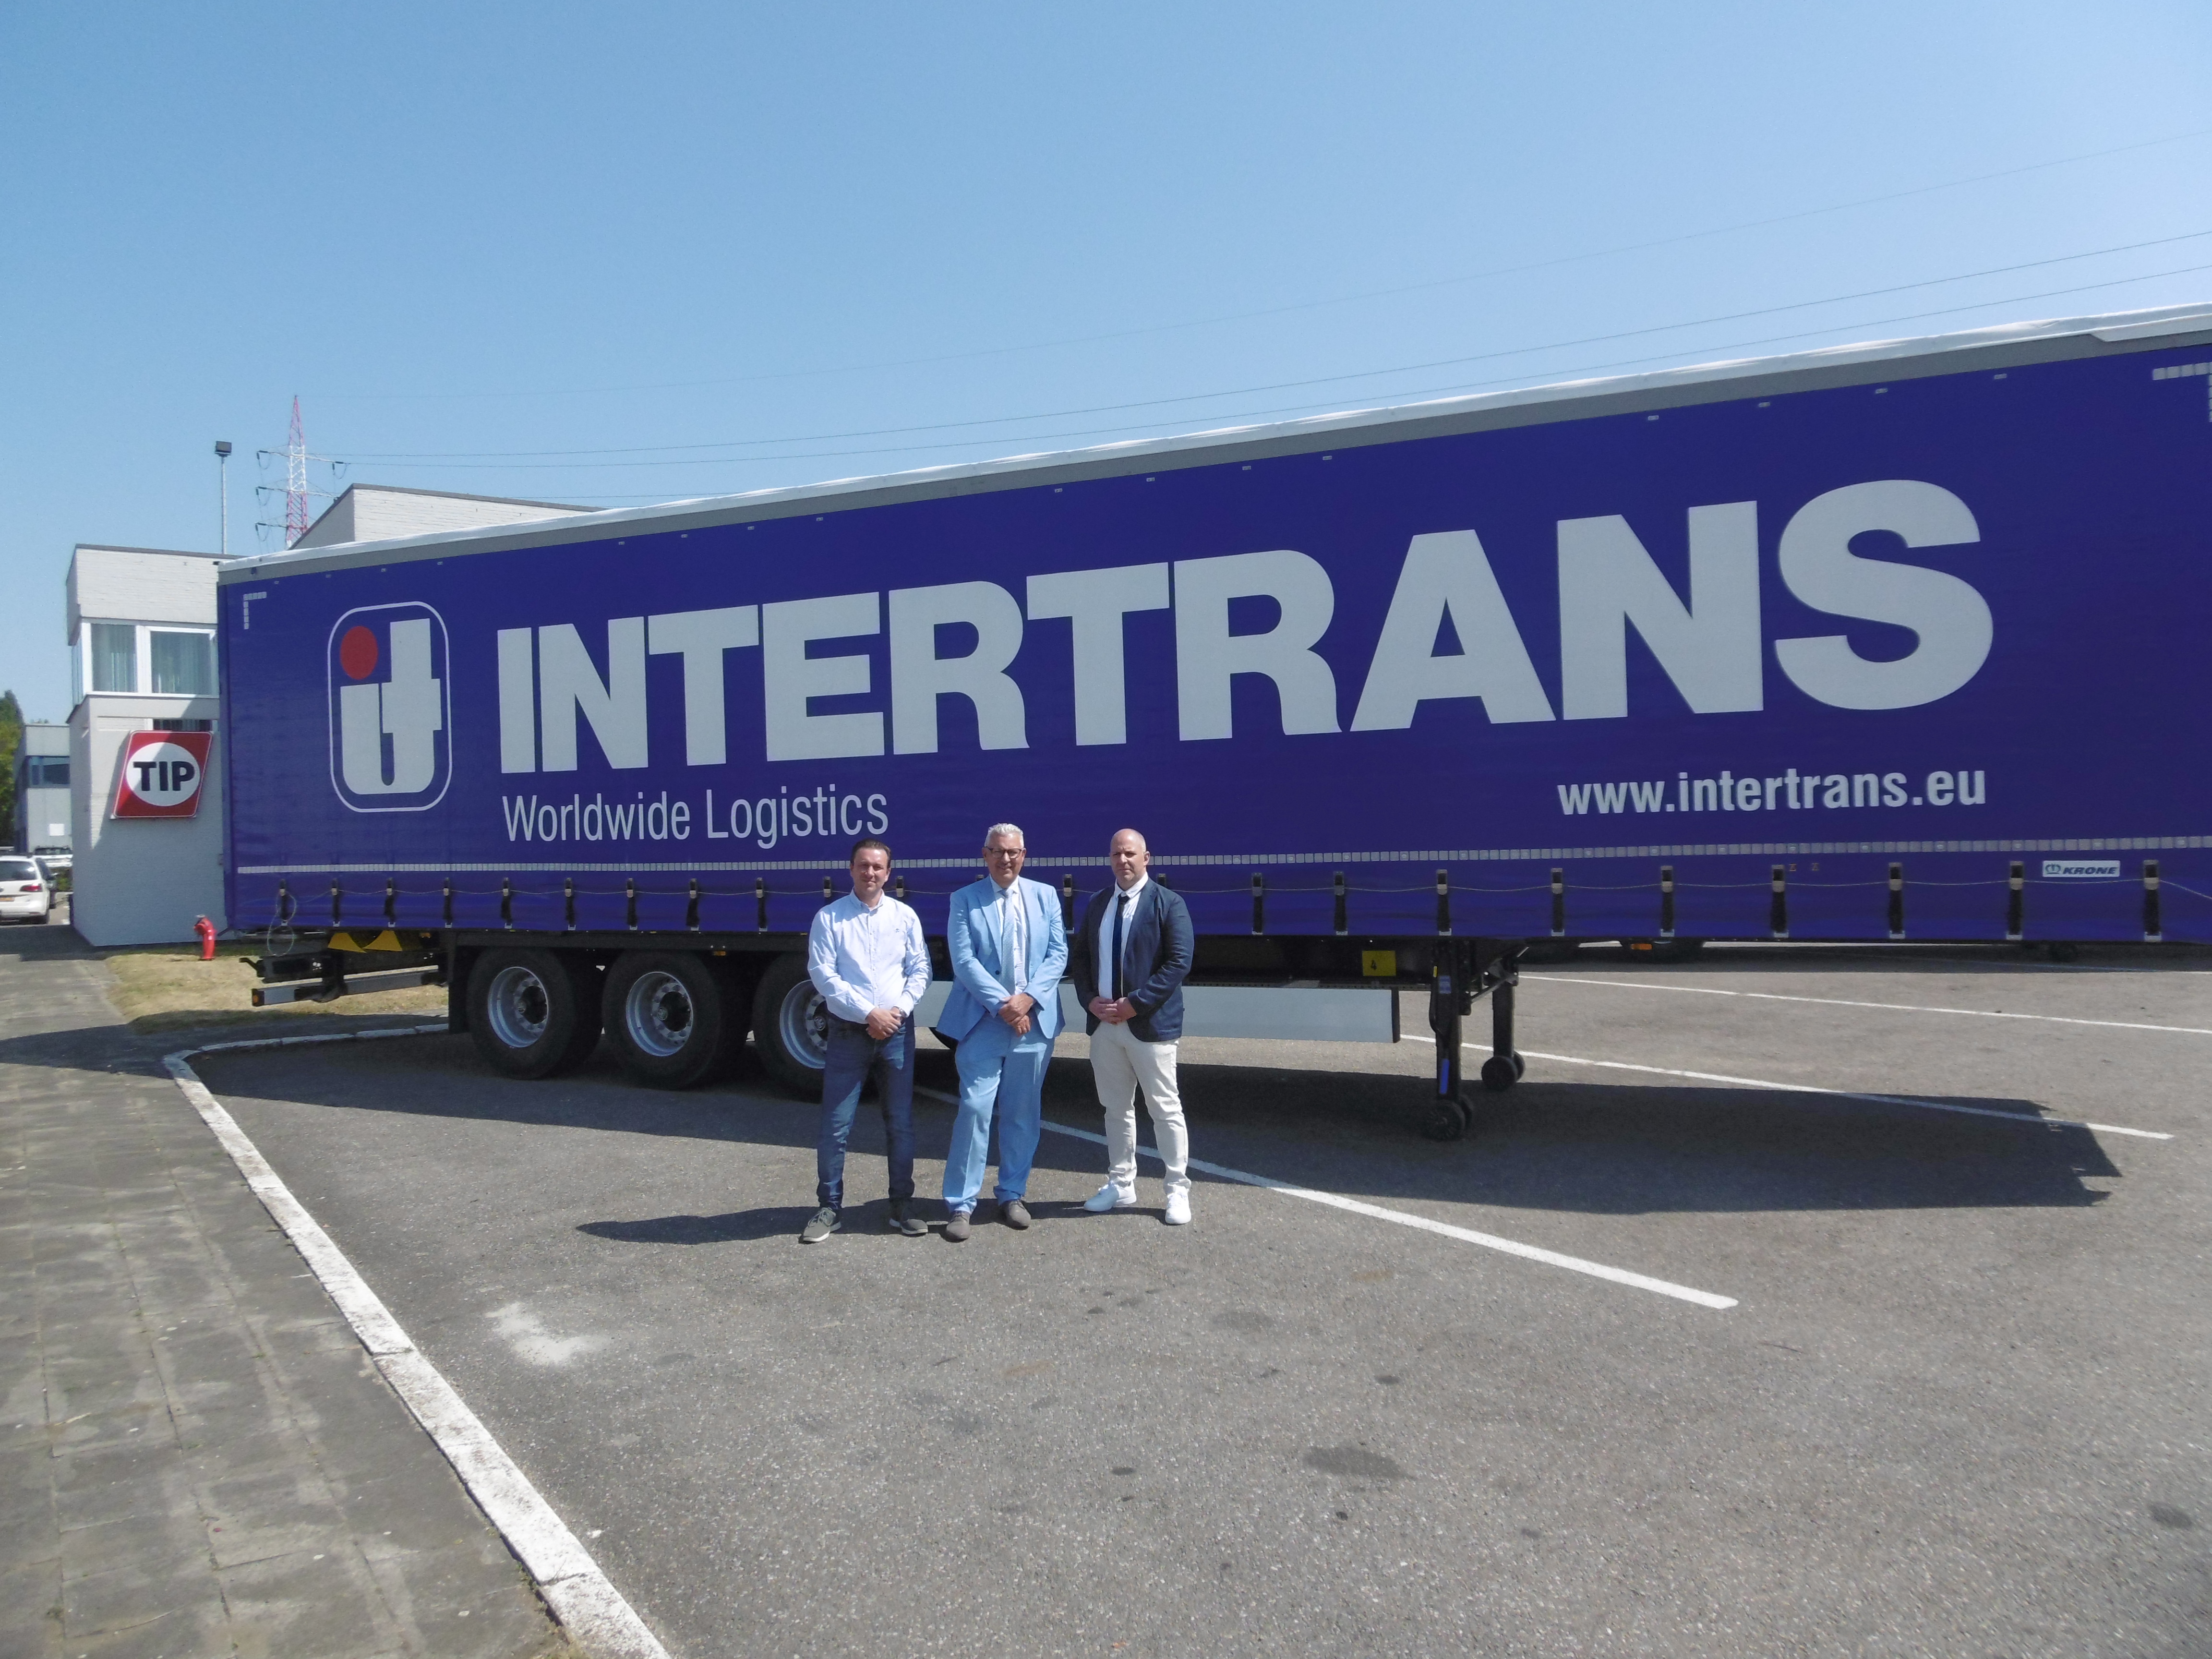 20220810 Uitbreiding vloot Intertrans met trailers